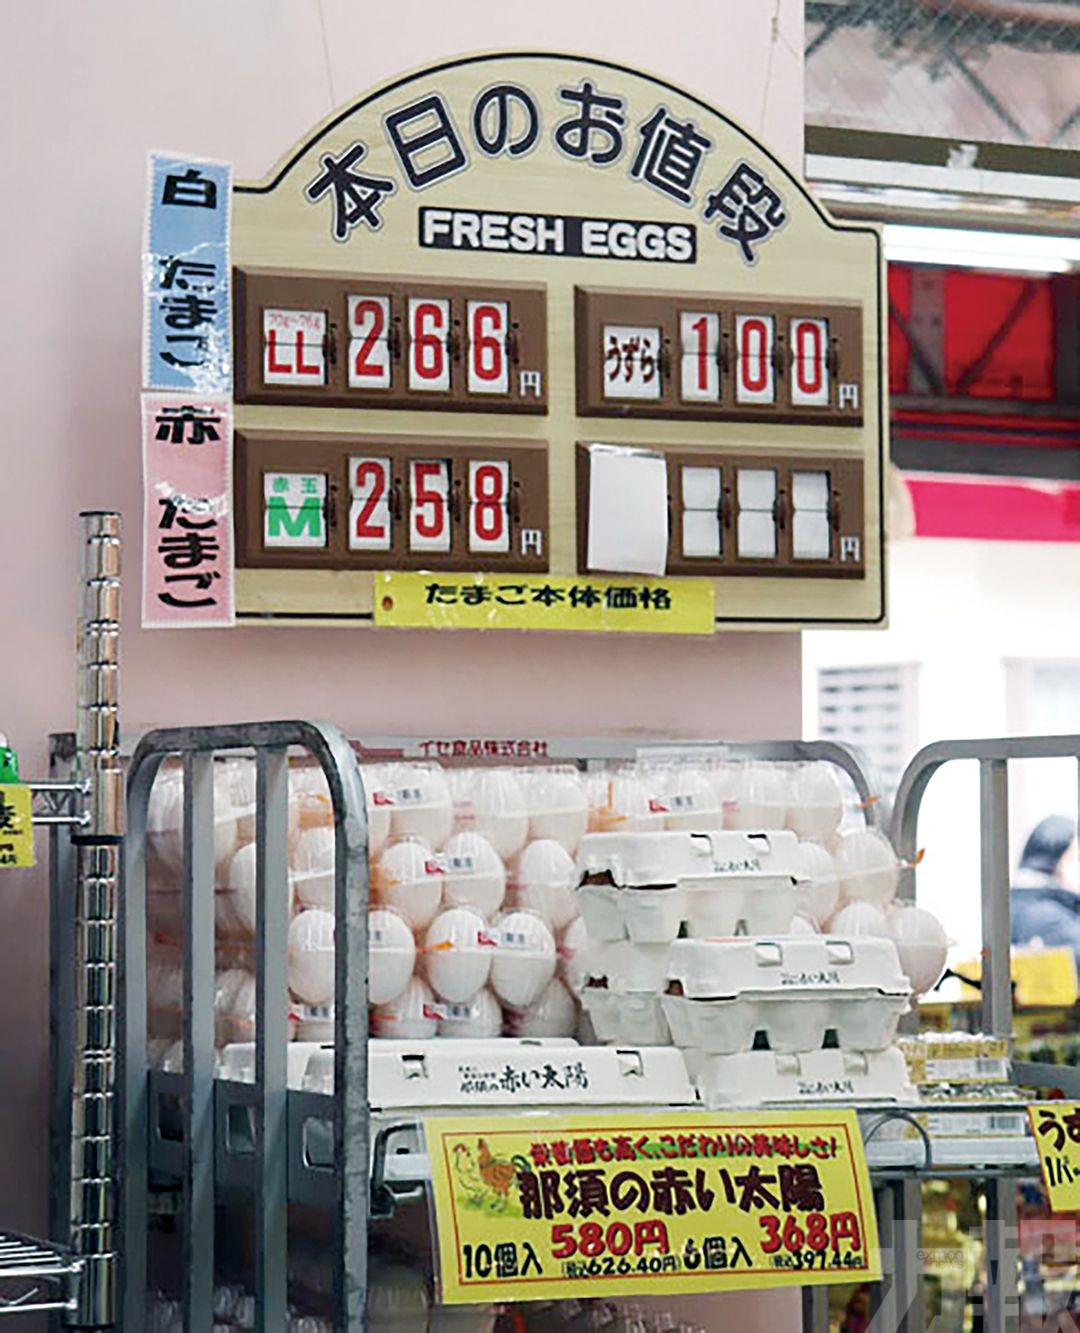 日本連鎖餐廳停售雞蛋餐點